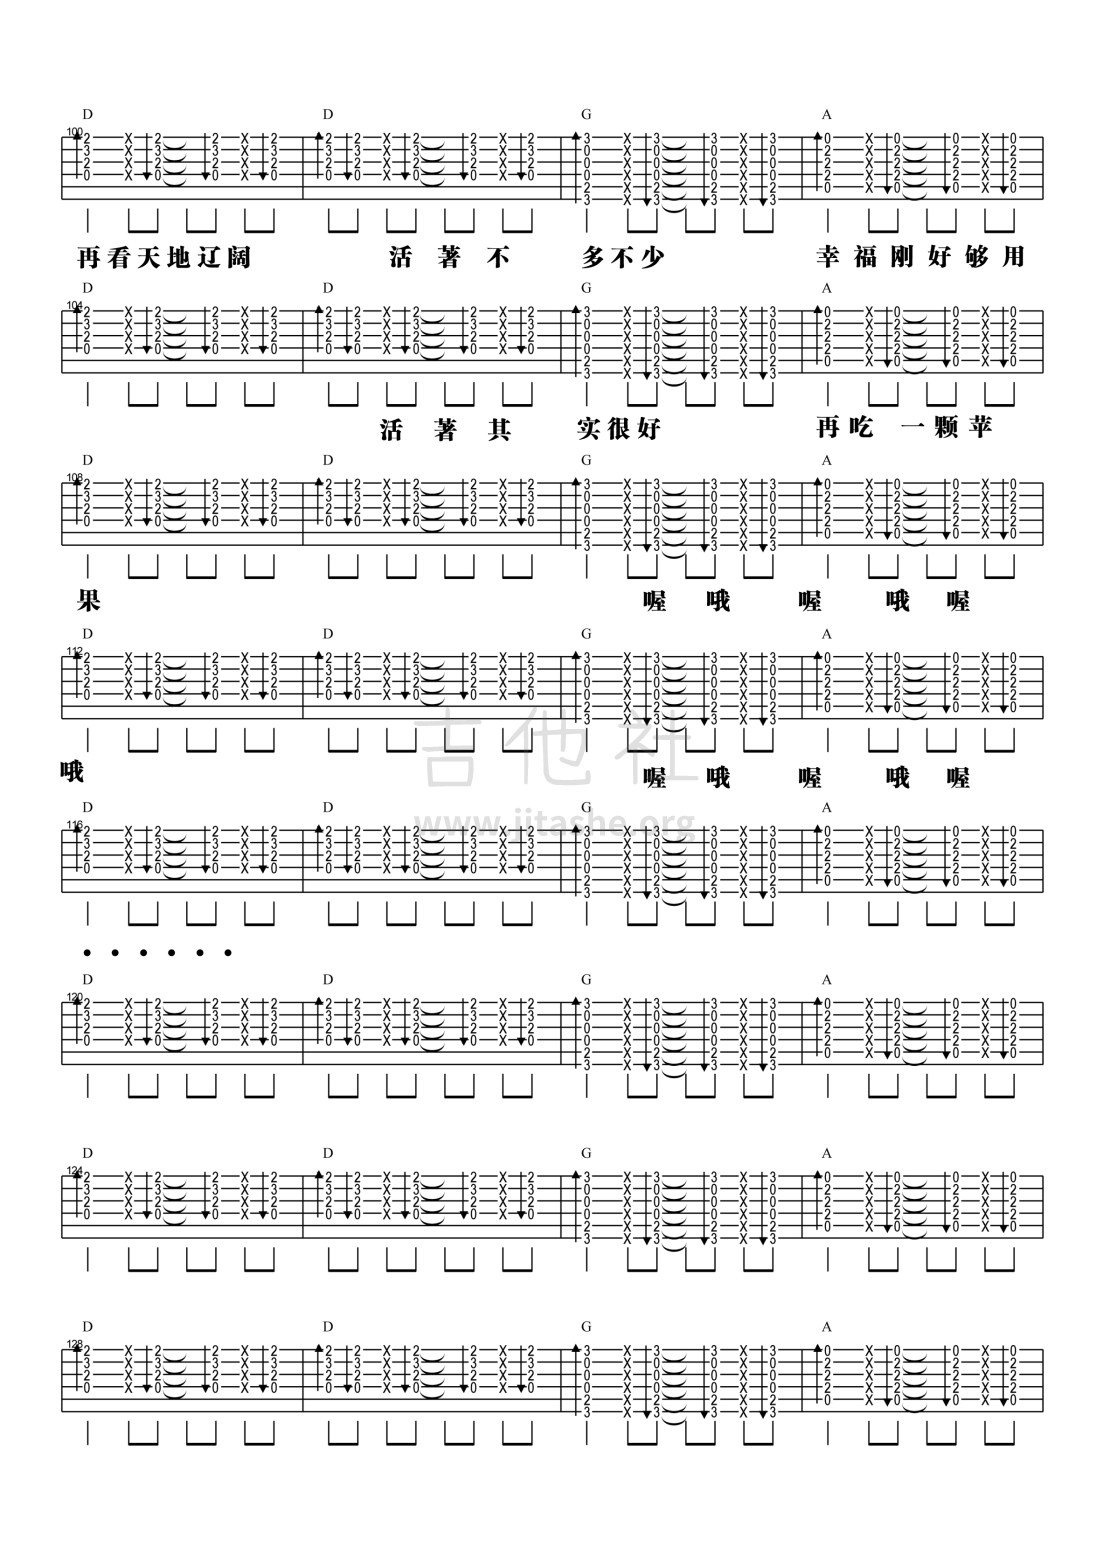 打印:【阿信乐器】#23 五月天《一颗苹果》吉他教学吉他谱_五月天(Mayday)_4.jpg